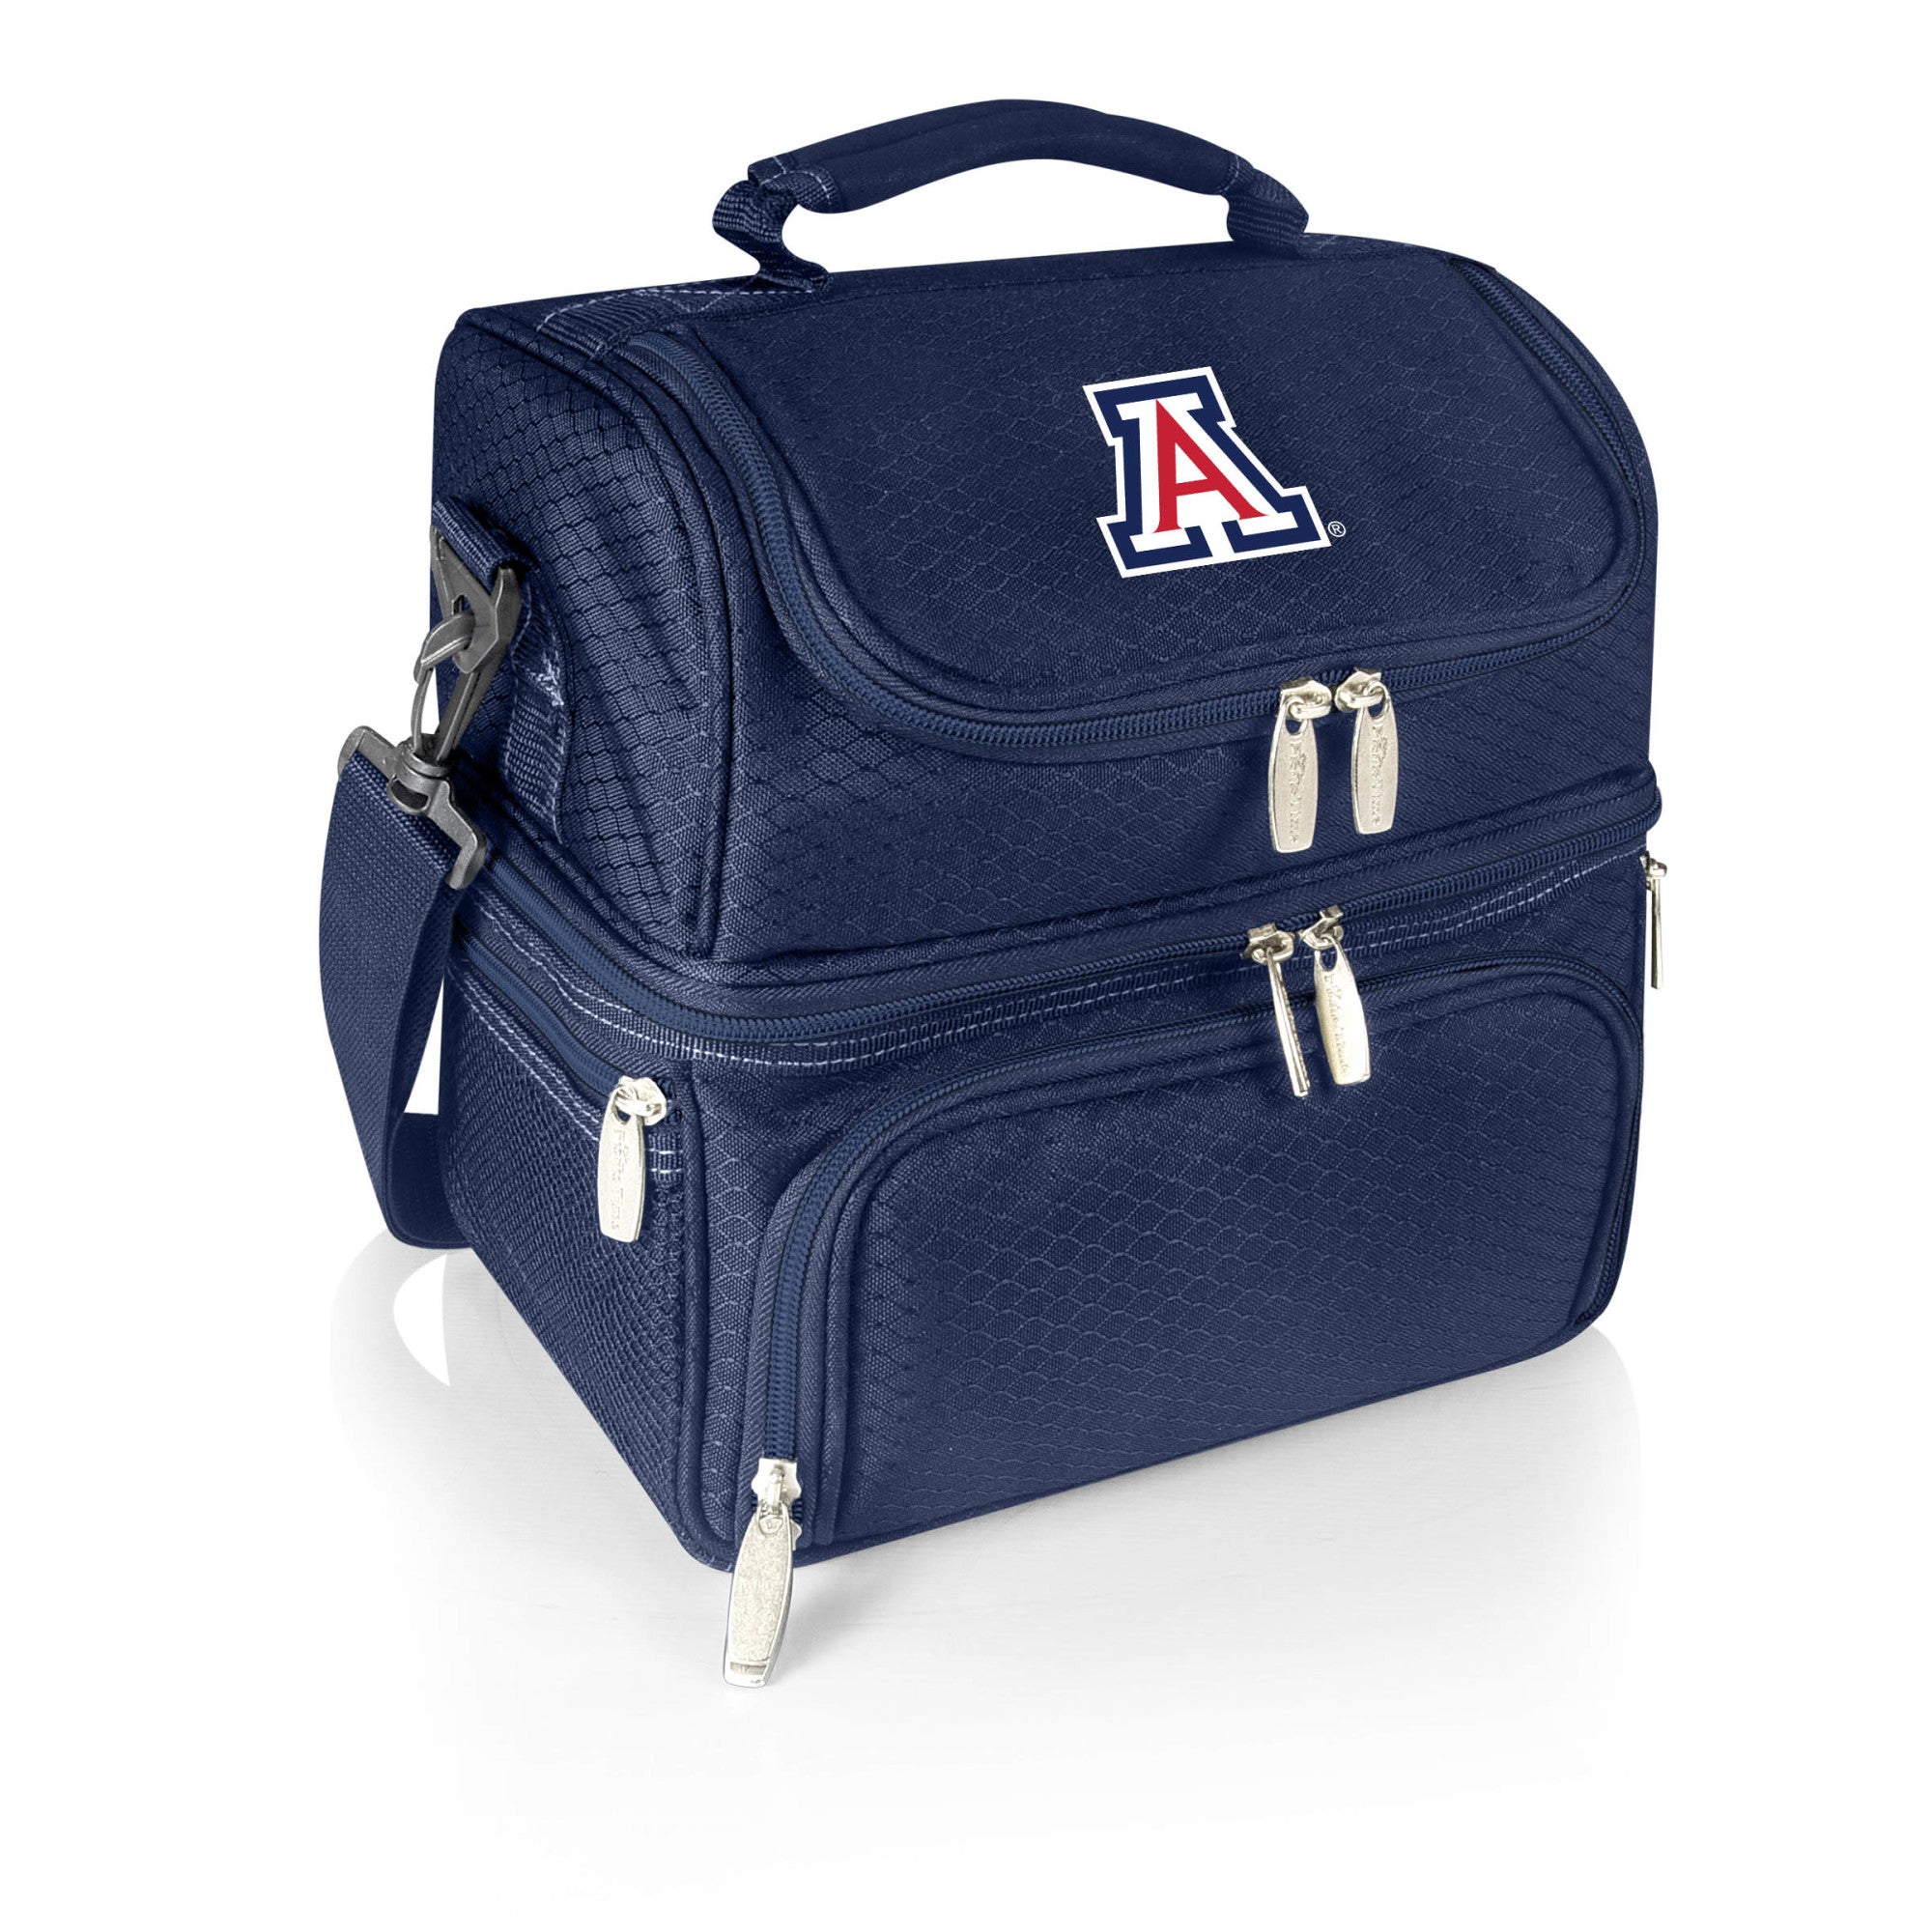 Arizona Wildcats - Pranzo Lunch Bag Cooler with Utensils